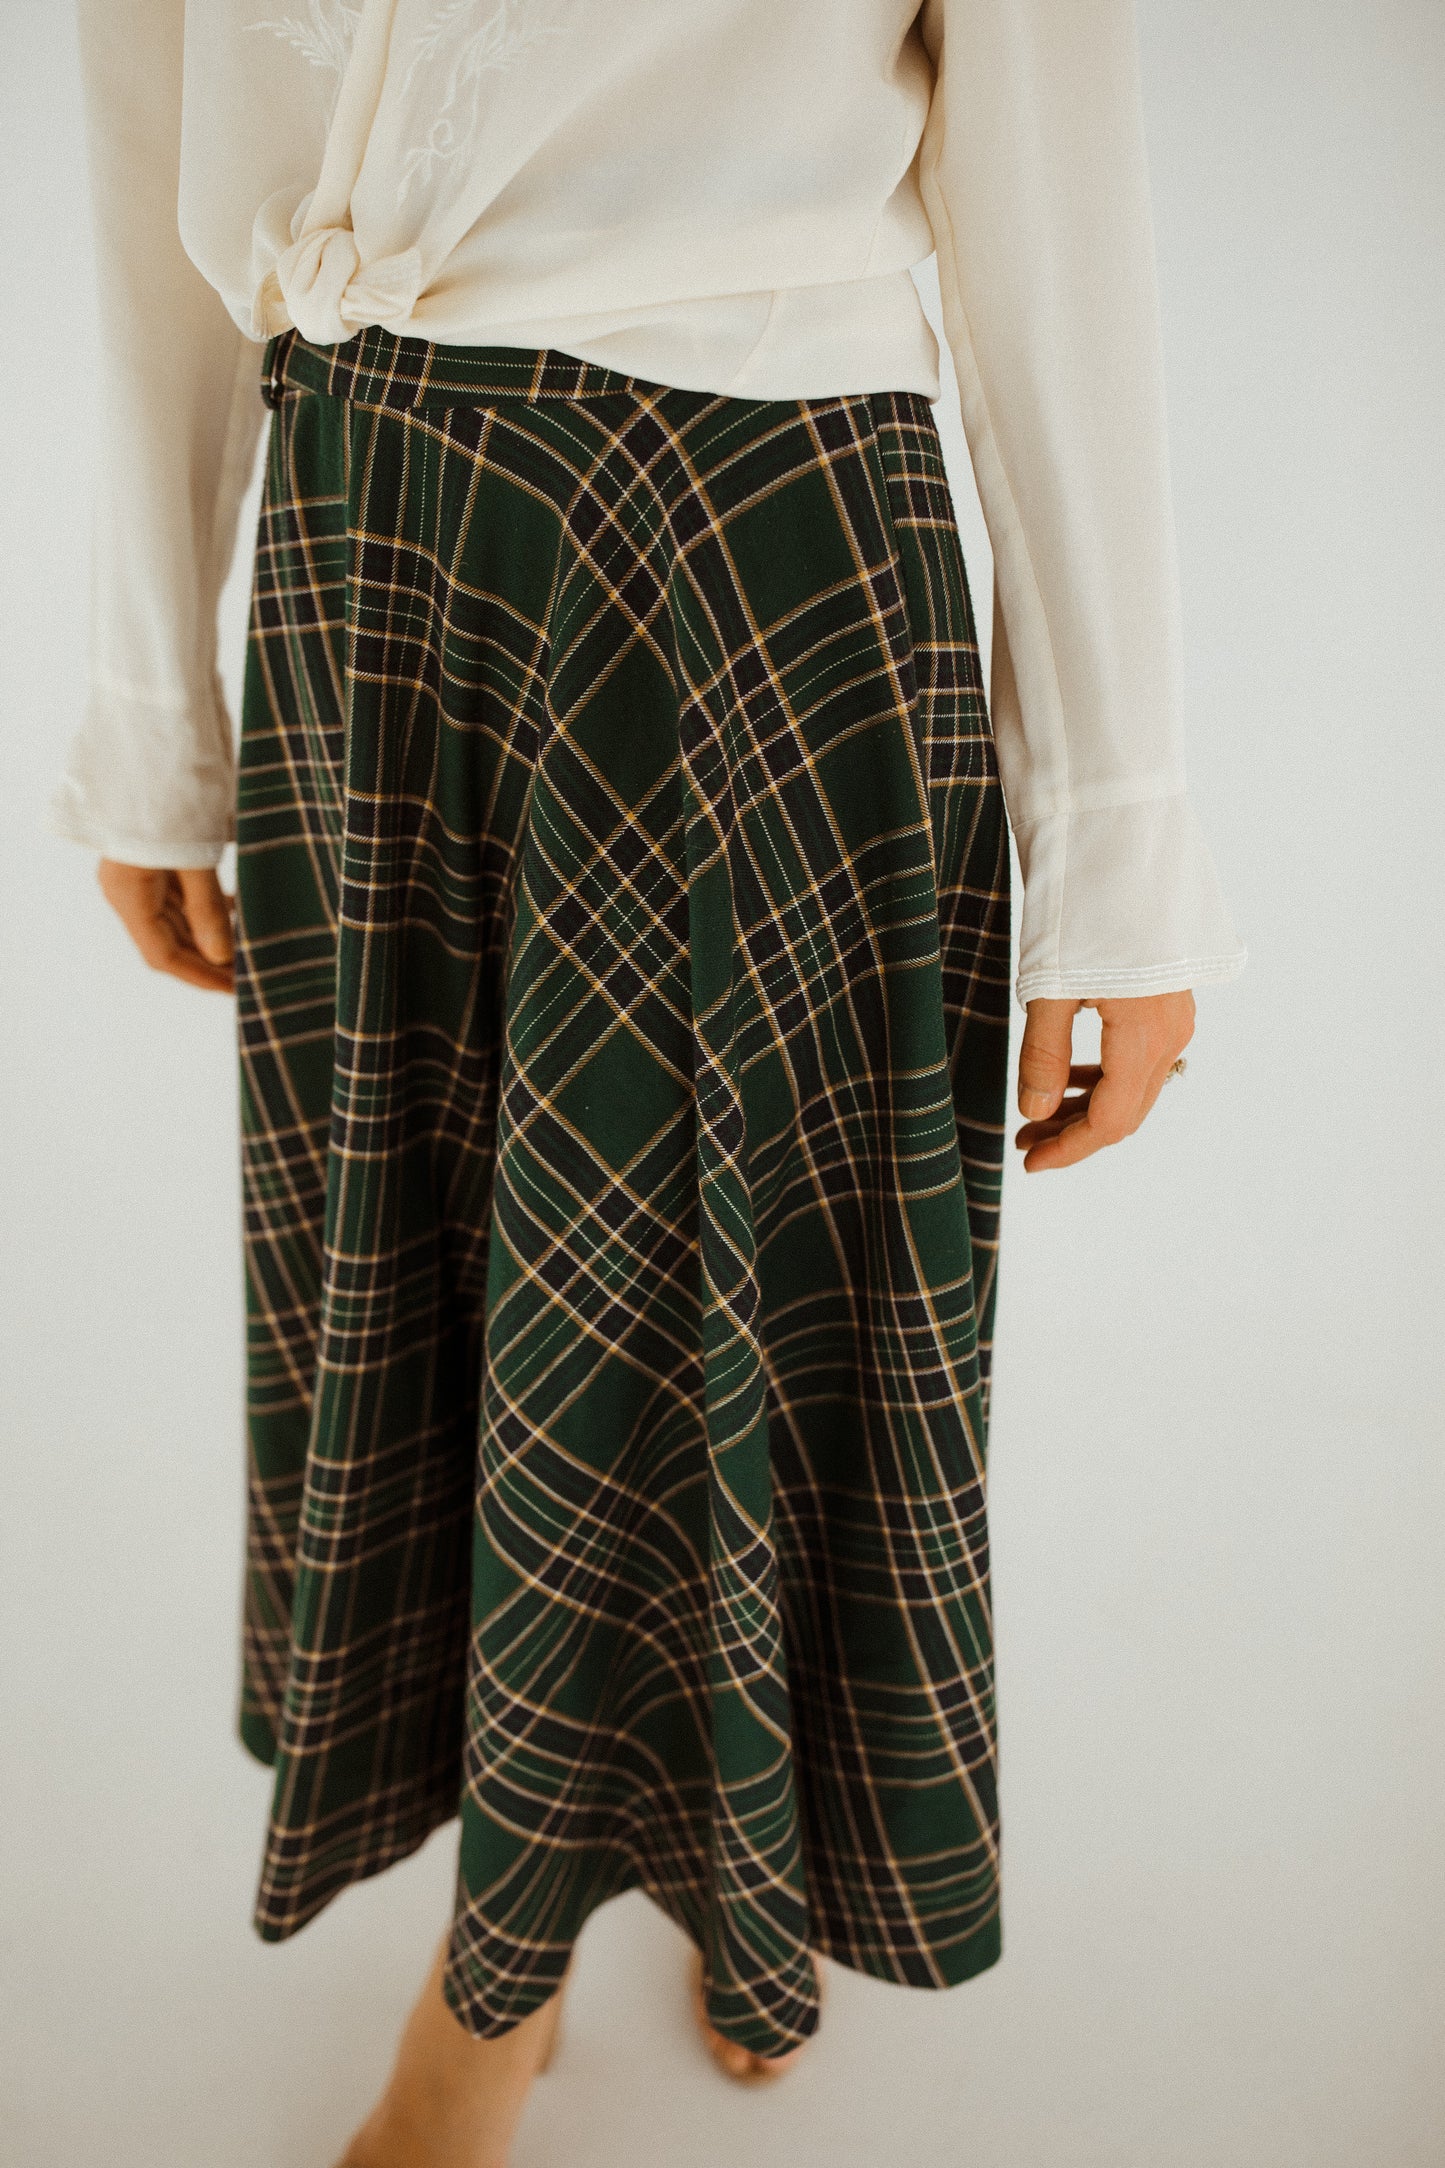 Zara Plaid Skirt